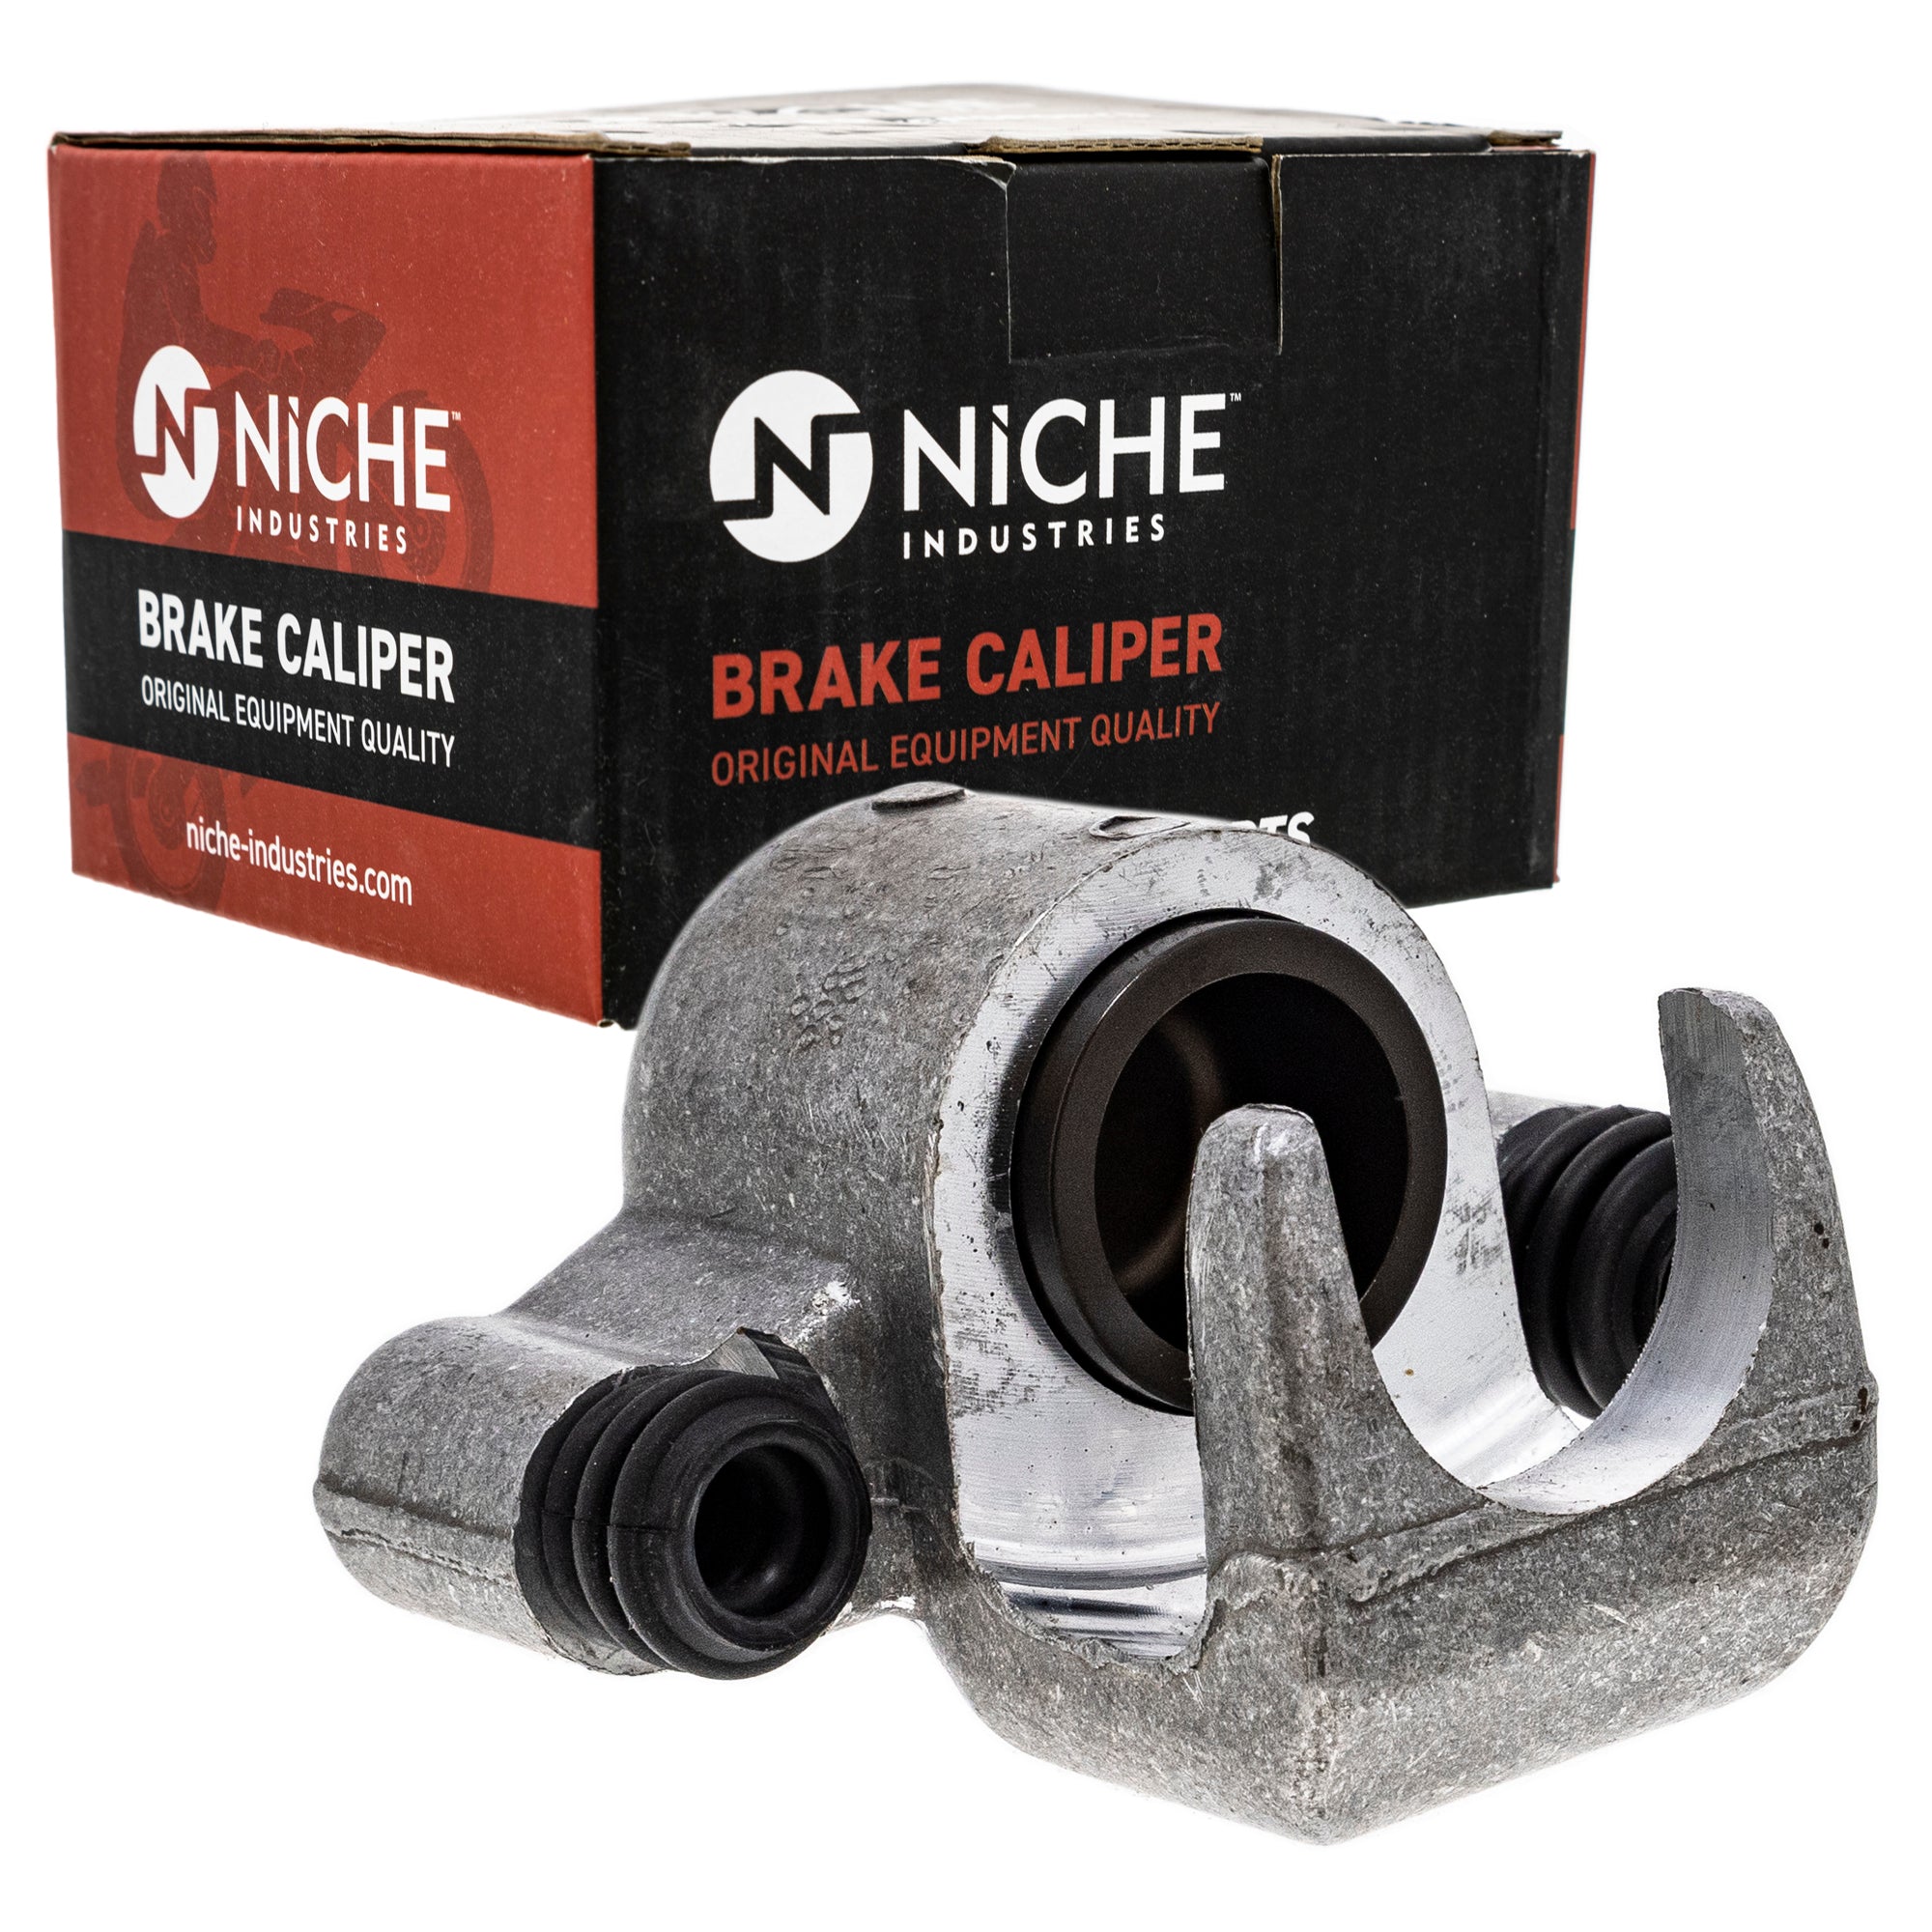 NICHE MK1001025 Brake Caliper Kit